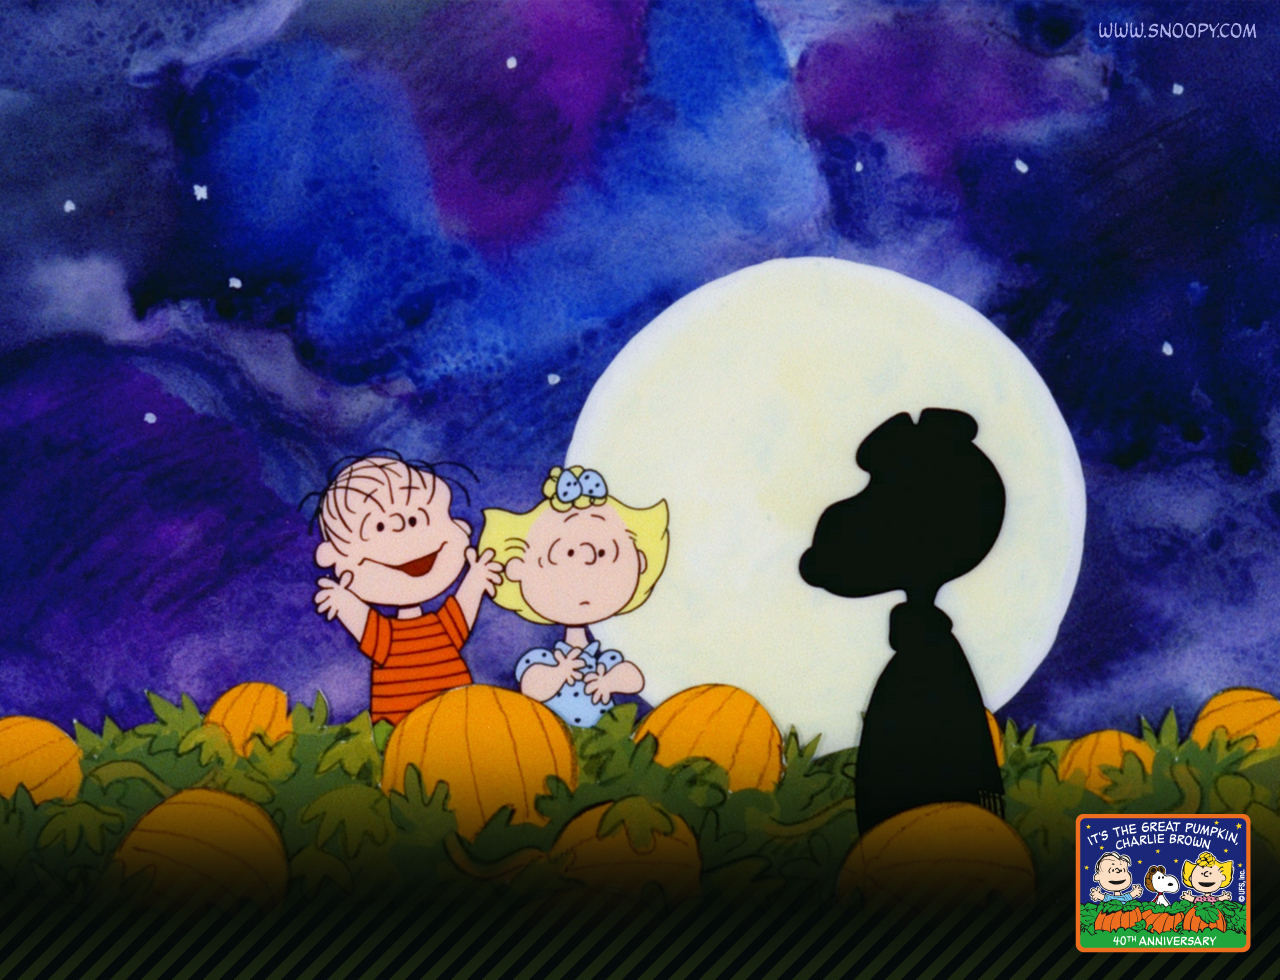 Peanuts Halloween Wallpaper Disney Charlie Brown